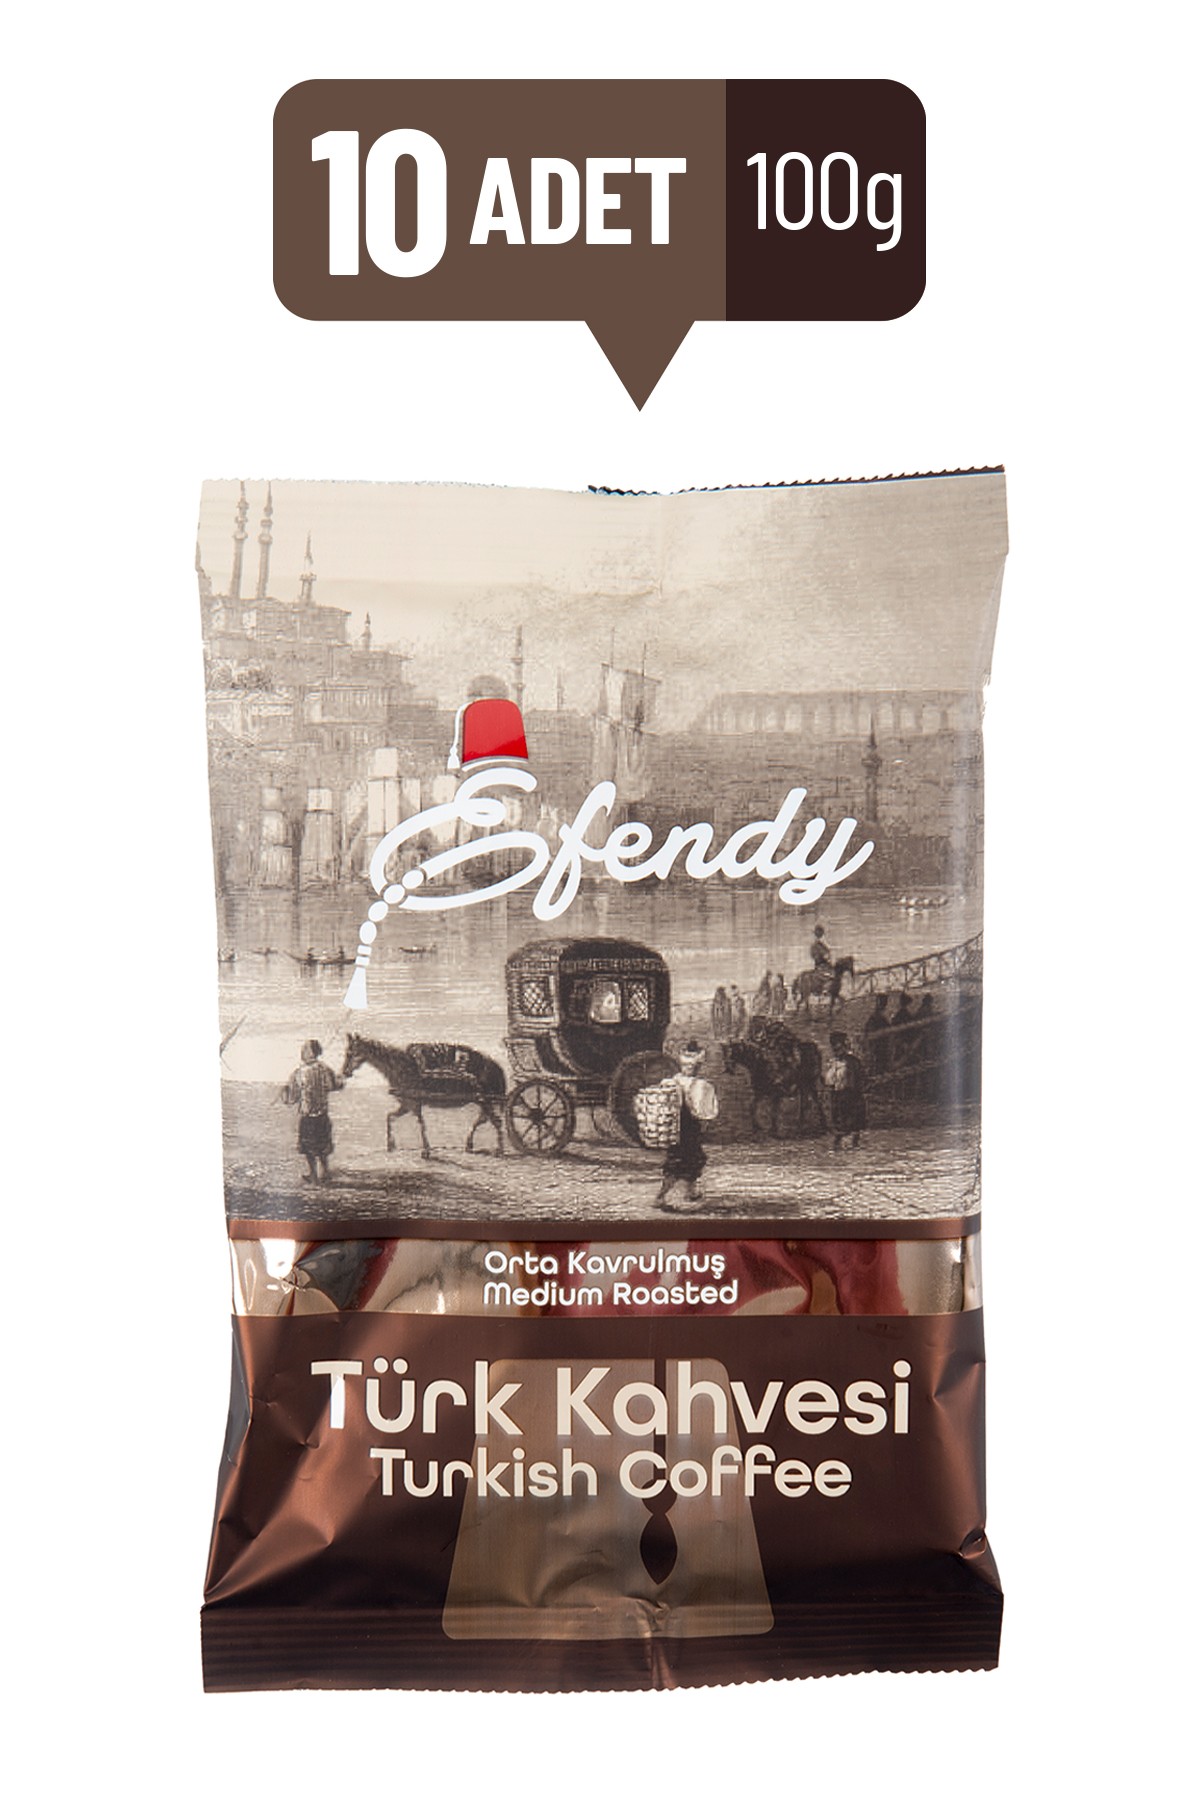 EFENDY Geleneksel Hazır Orta Kavrulmuş Türk Kahvesi 100G x 10 Adet